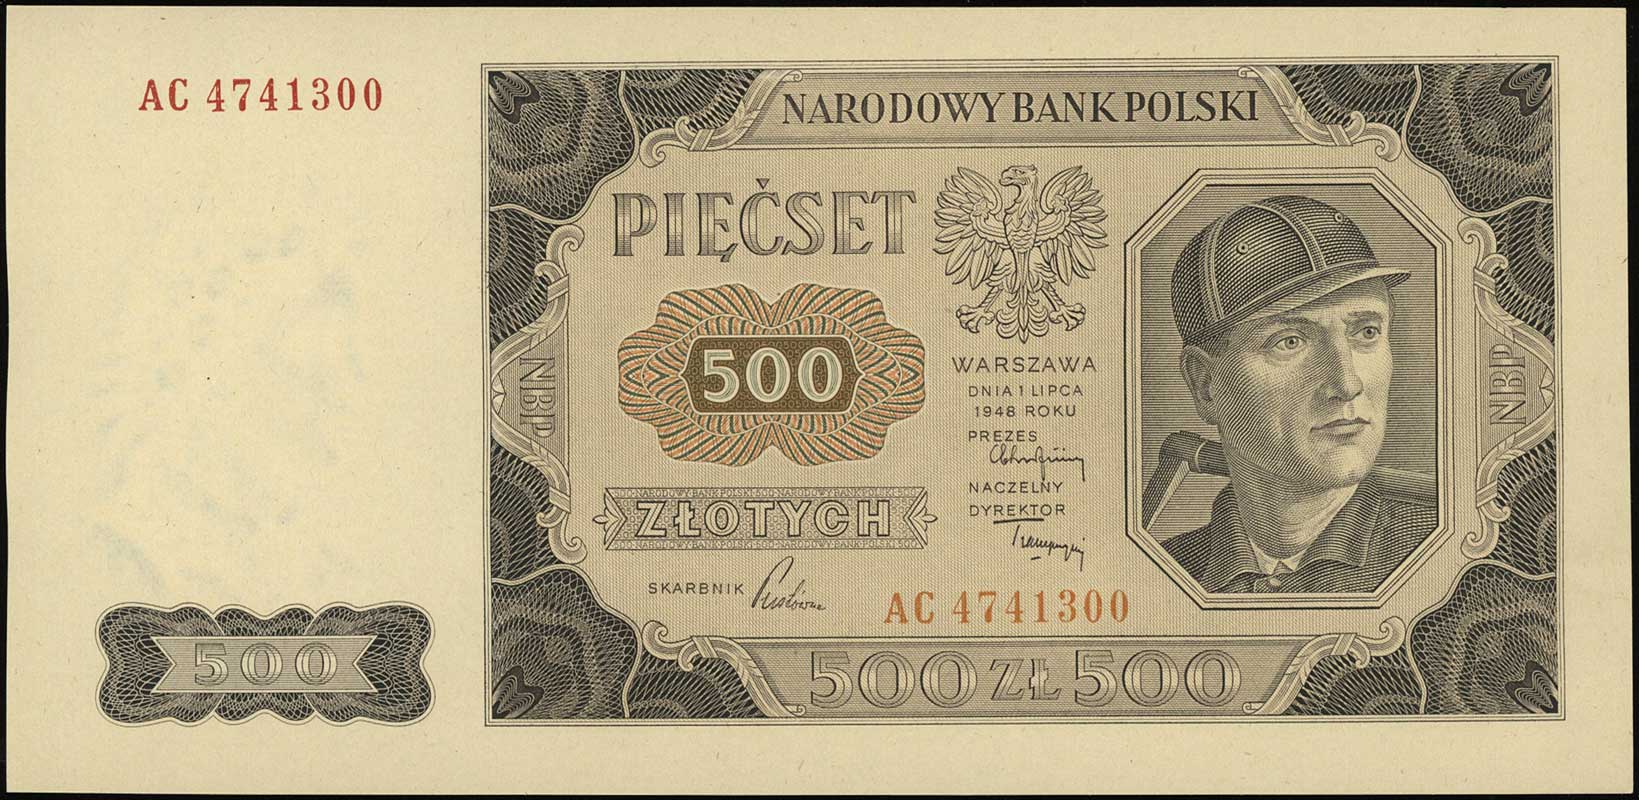 500 złotych 1.07.1948, seria AC, numeracja 4741300, Lucow 1308 (R2), Miłczak’05 140bb, Miłczak’12 140b, wyśmienicie zachowane